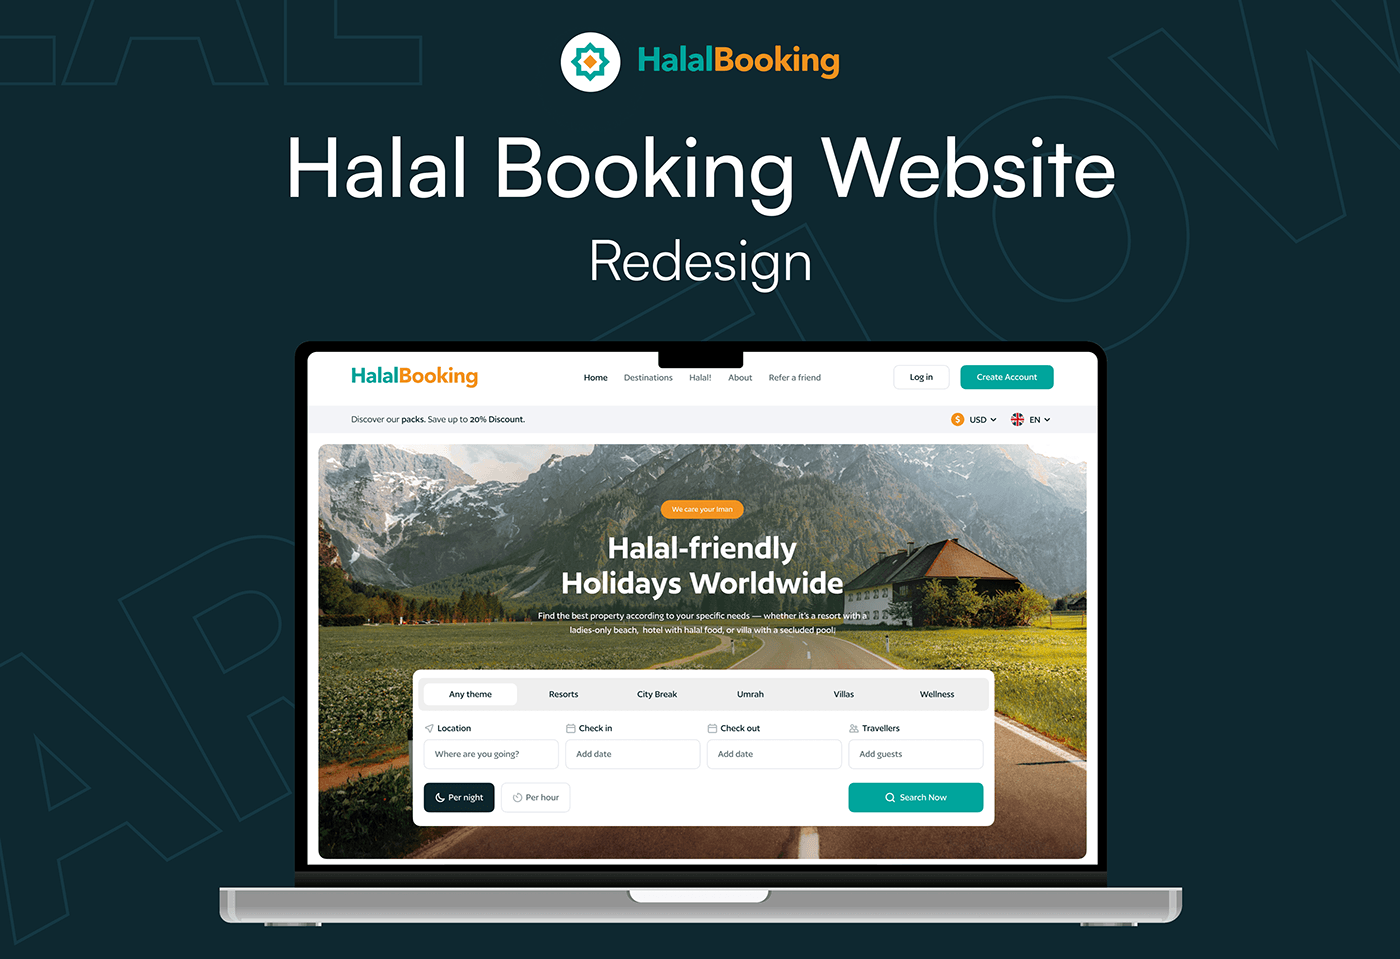 Website Design redesign uiuxdesign landing page website redesign website revamp Halal web design agency responsive website booking website